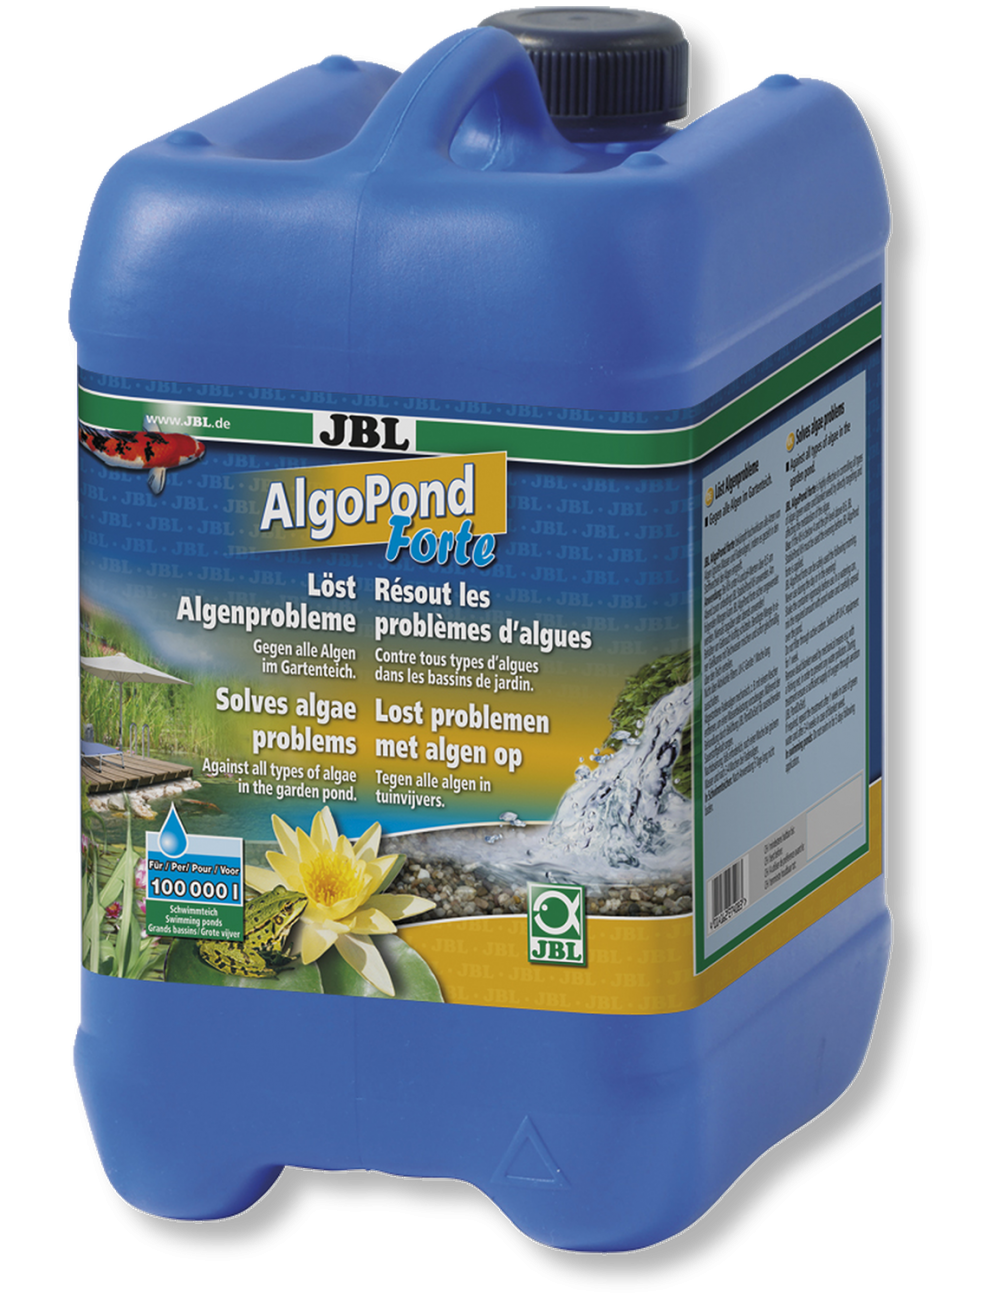 JBL - AlgoPond Forte - 5l - Conditionneur d'eau contre toutes les algues